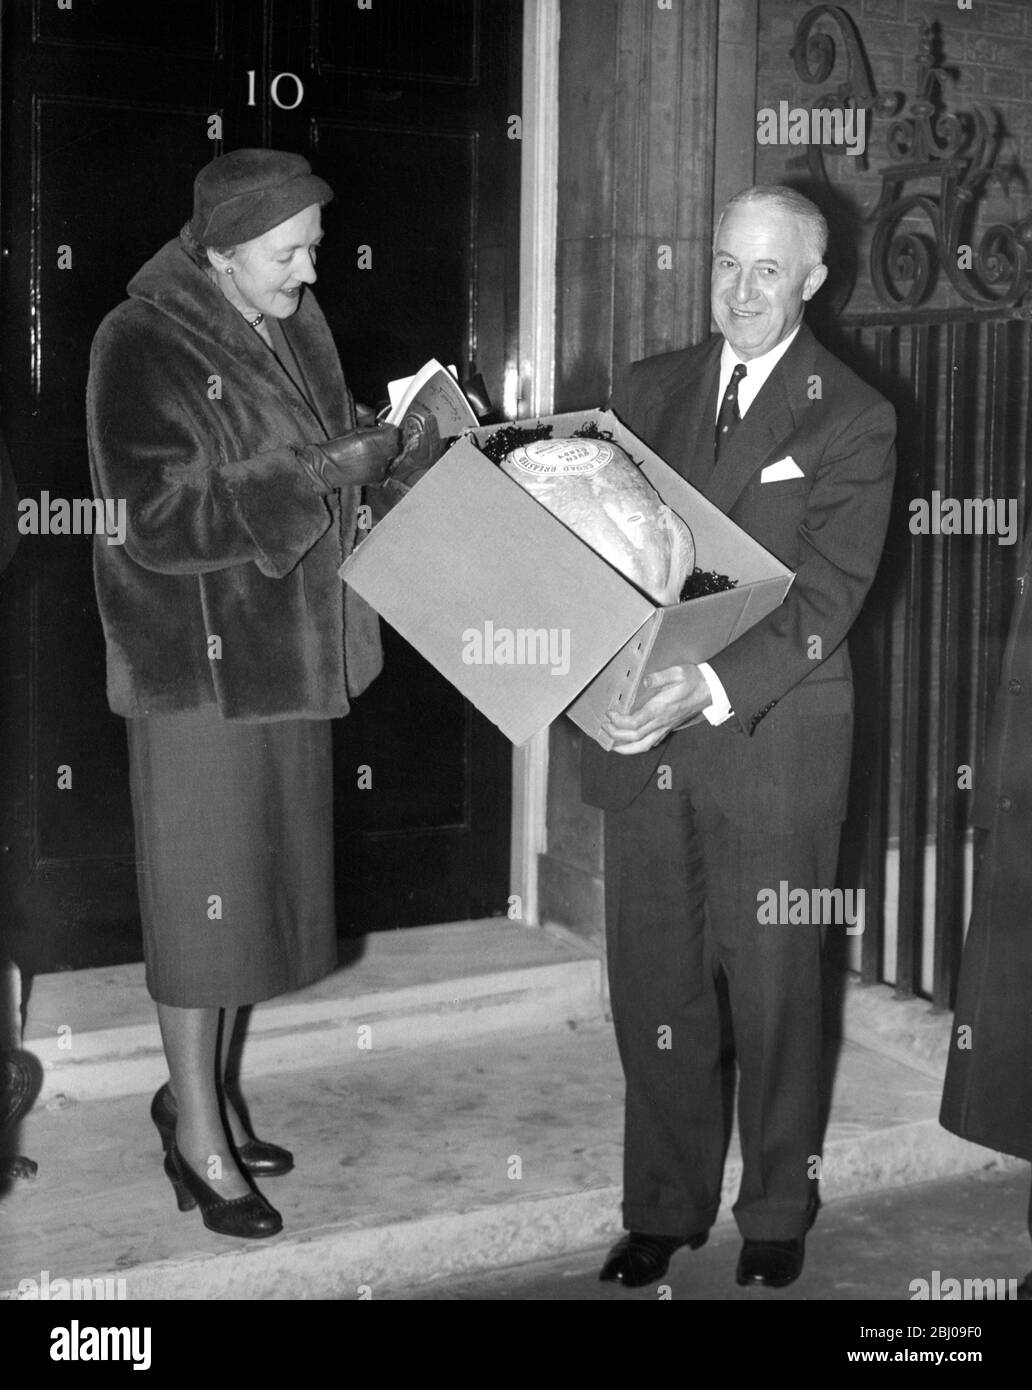 Il Sig. F.A. Bourne , della British Turkey Federation , e sua moglie, con una turchia di 28 lbs in dono al primo Ministro Anthony Eden - 10 Downing Street, Londra, Inghilterra - 21 dicembre 1956 Foto Stock